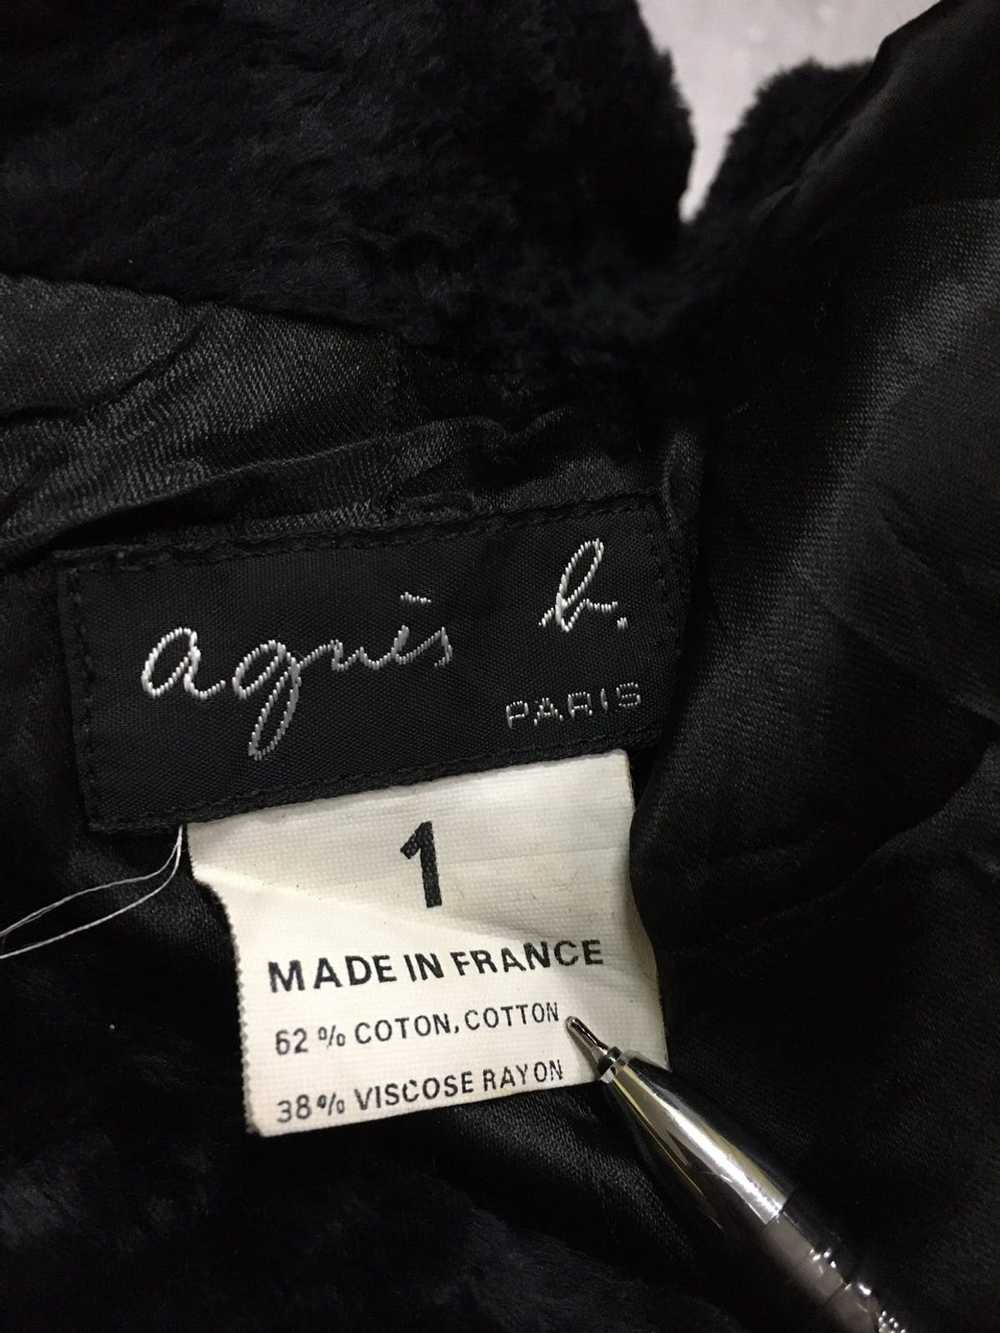 Agnes B. Agnes B. jacket/blazer - image 5